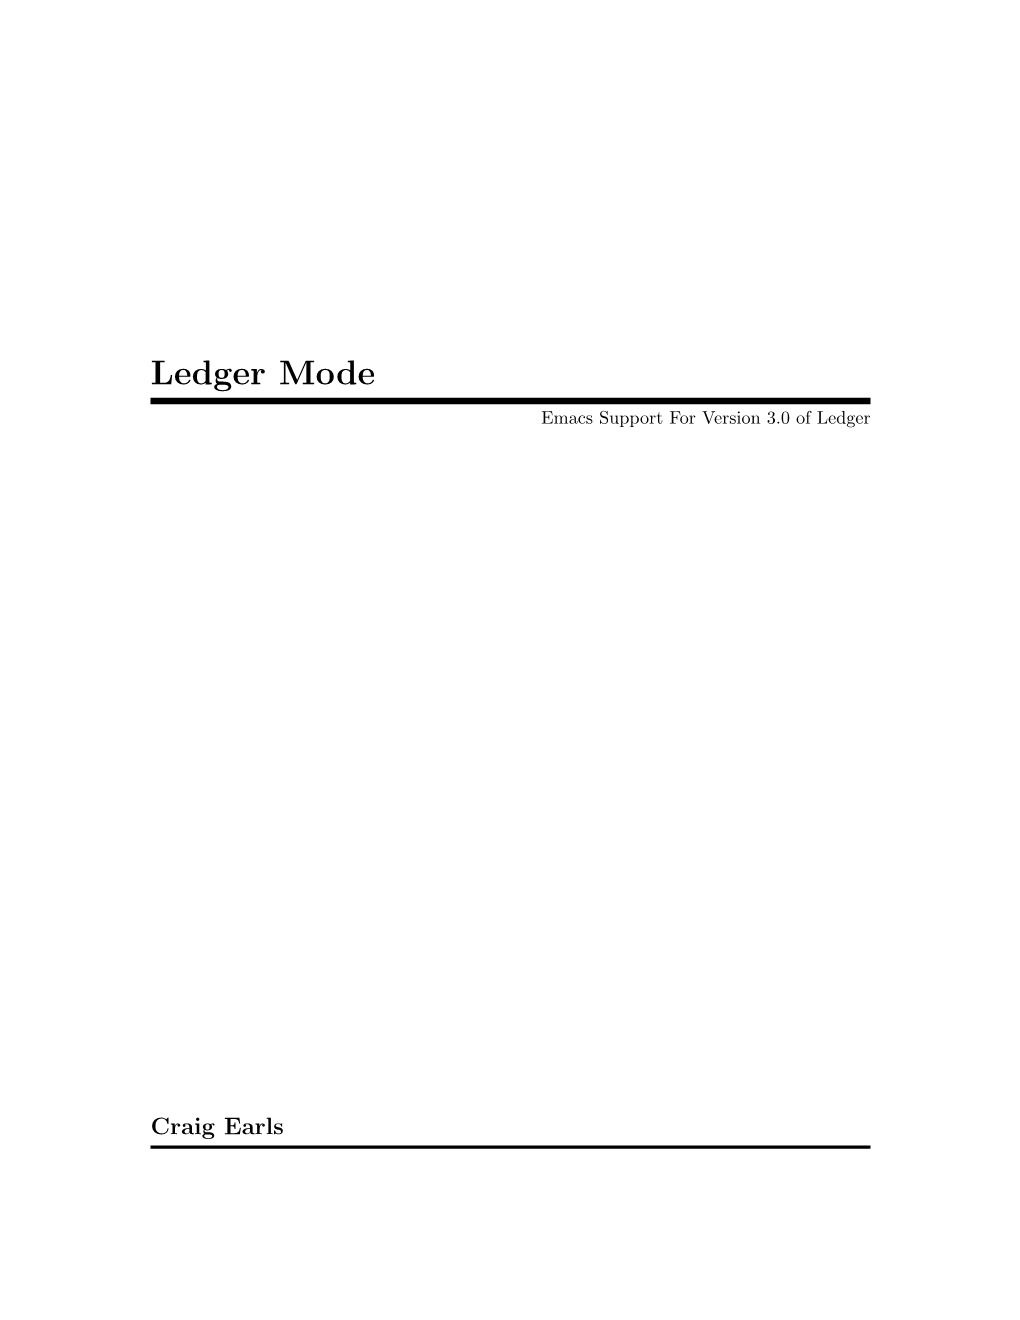 Ledger Mode Emacs Support for Version 3.0 of Ledger